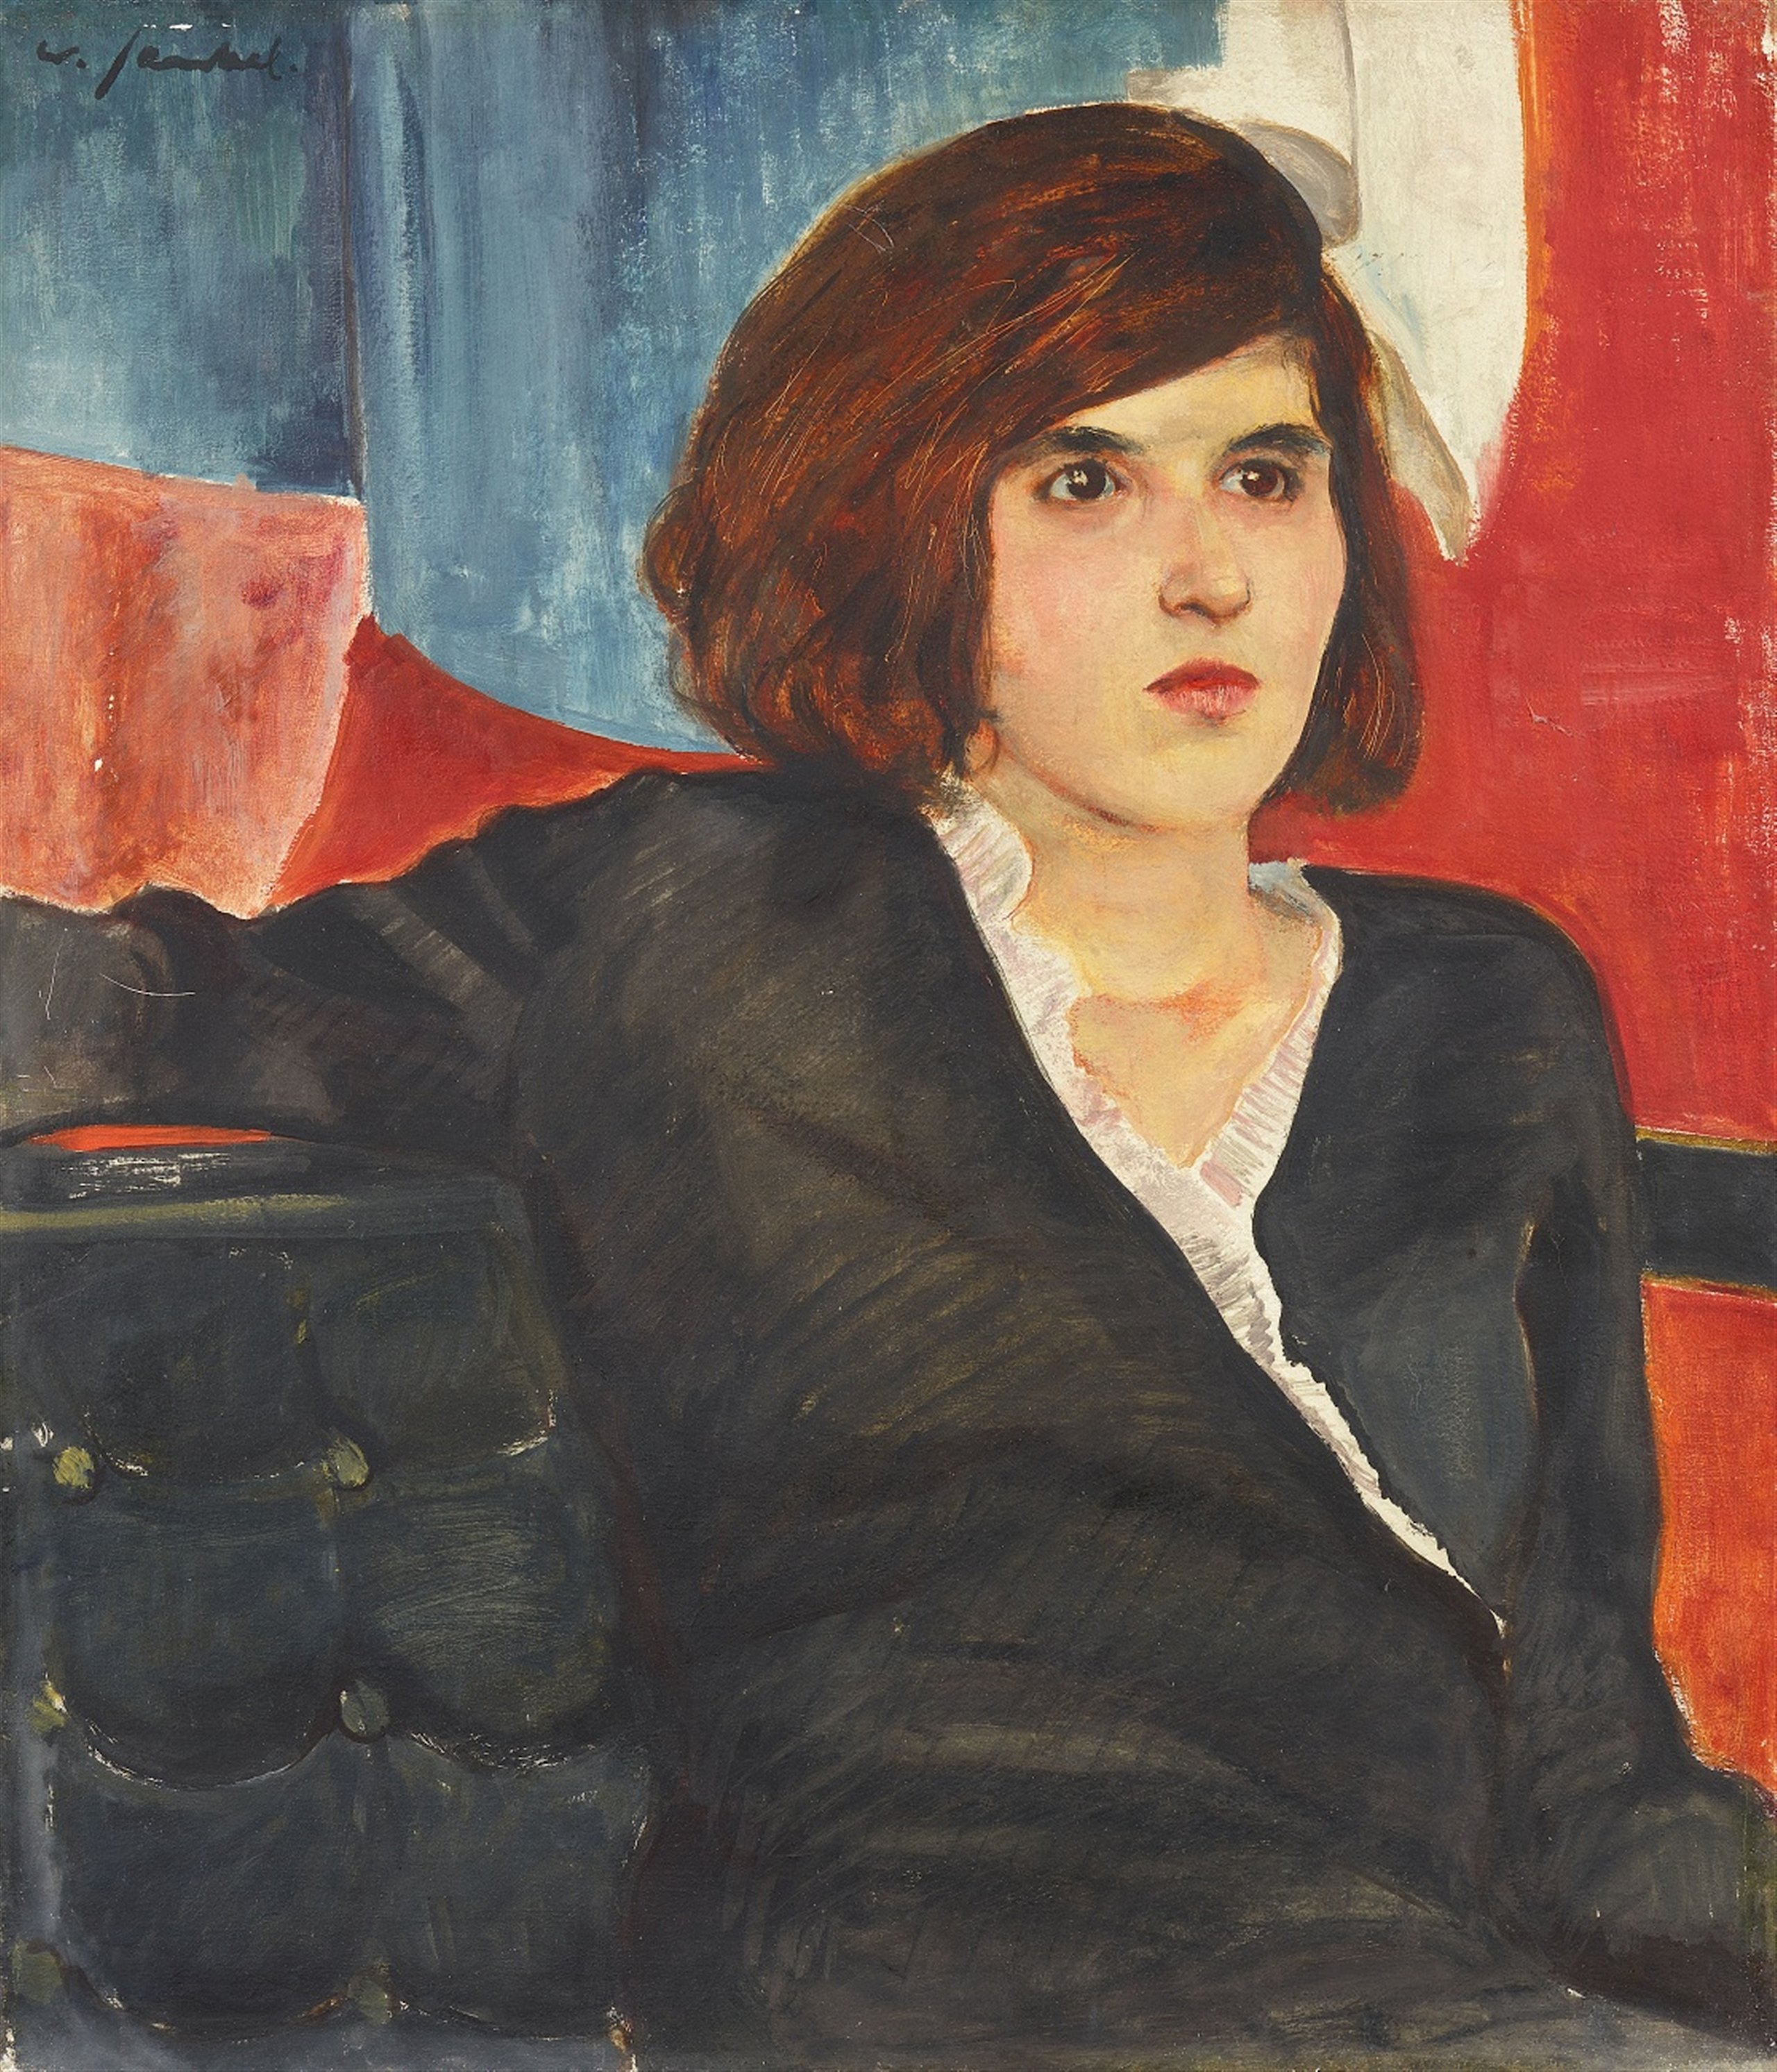 Mujer joven en silla de Barcelona by Willy Jaeckel - ca. 1930 - 70,5 x 60,5 cm Colección privada